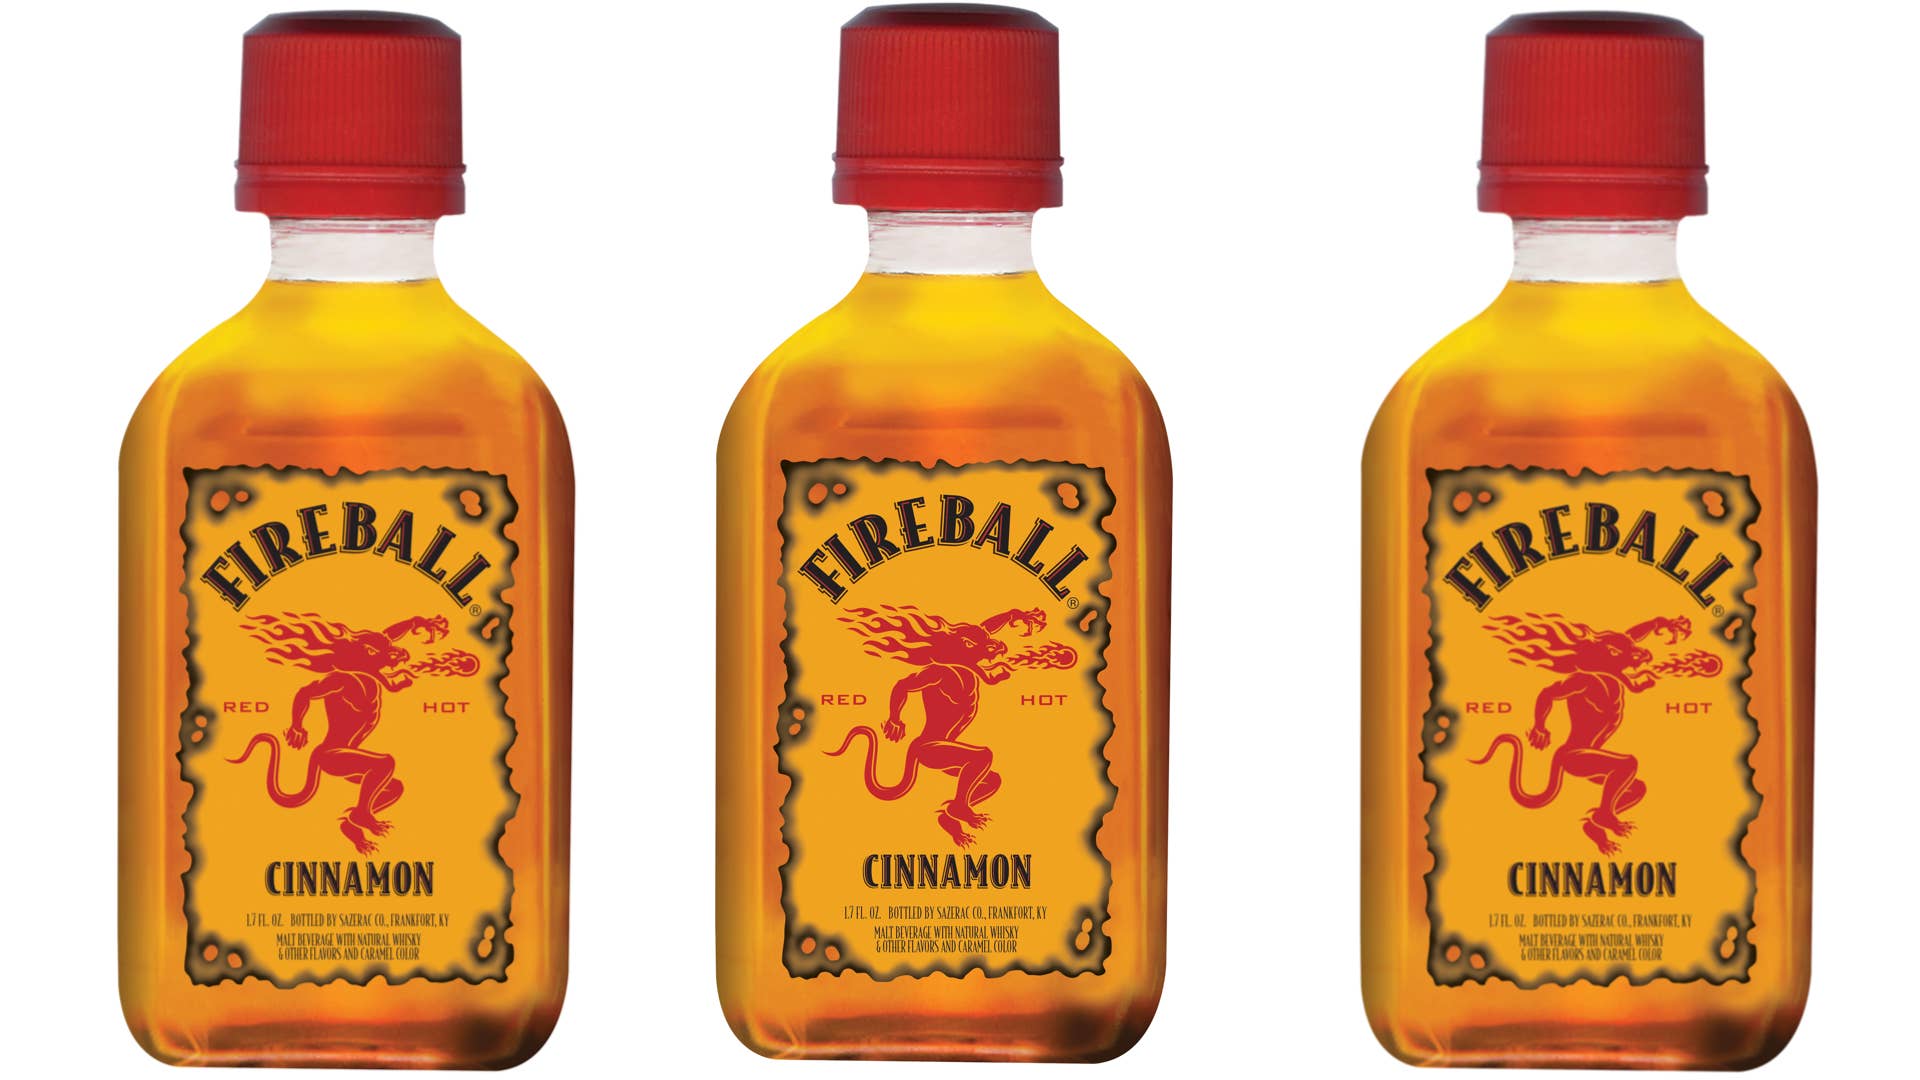 fireball whiskey lawsuit false advertising